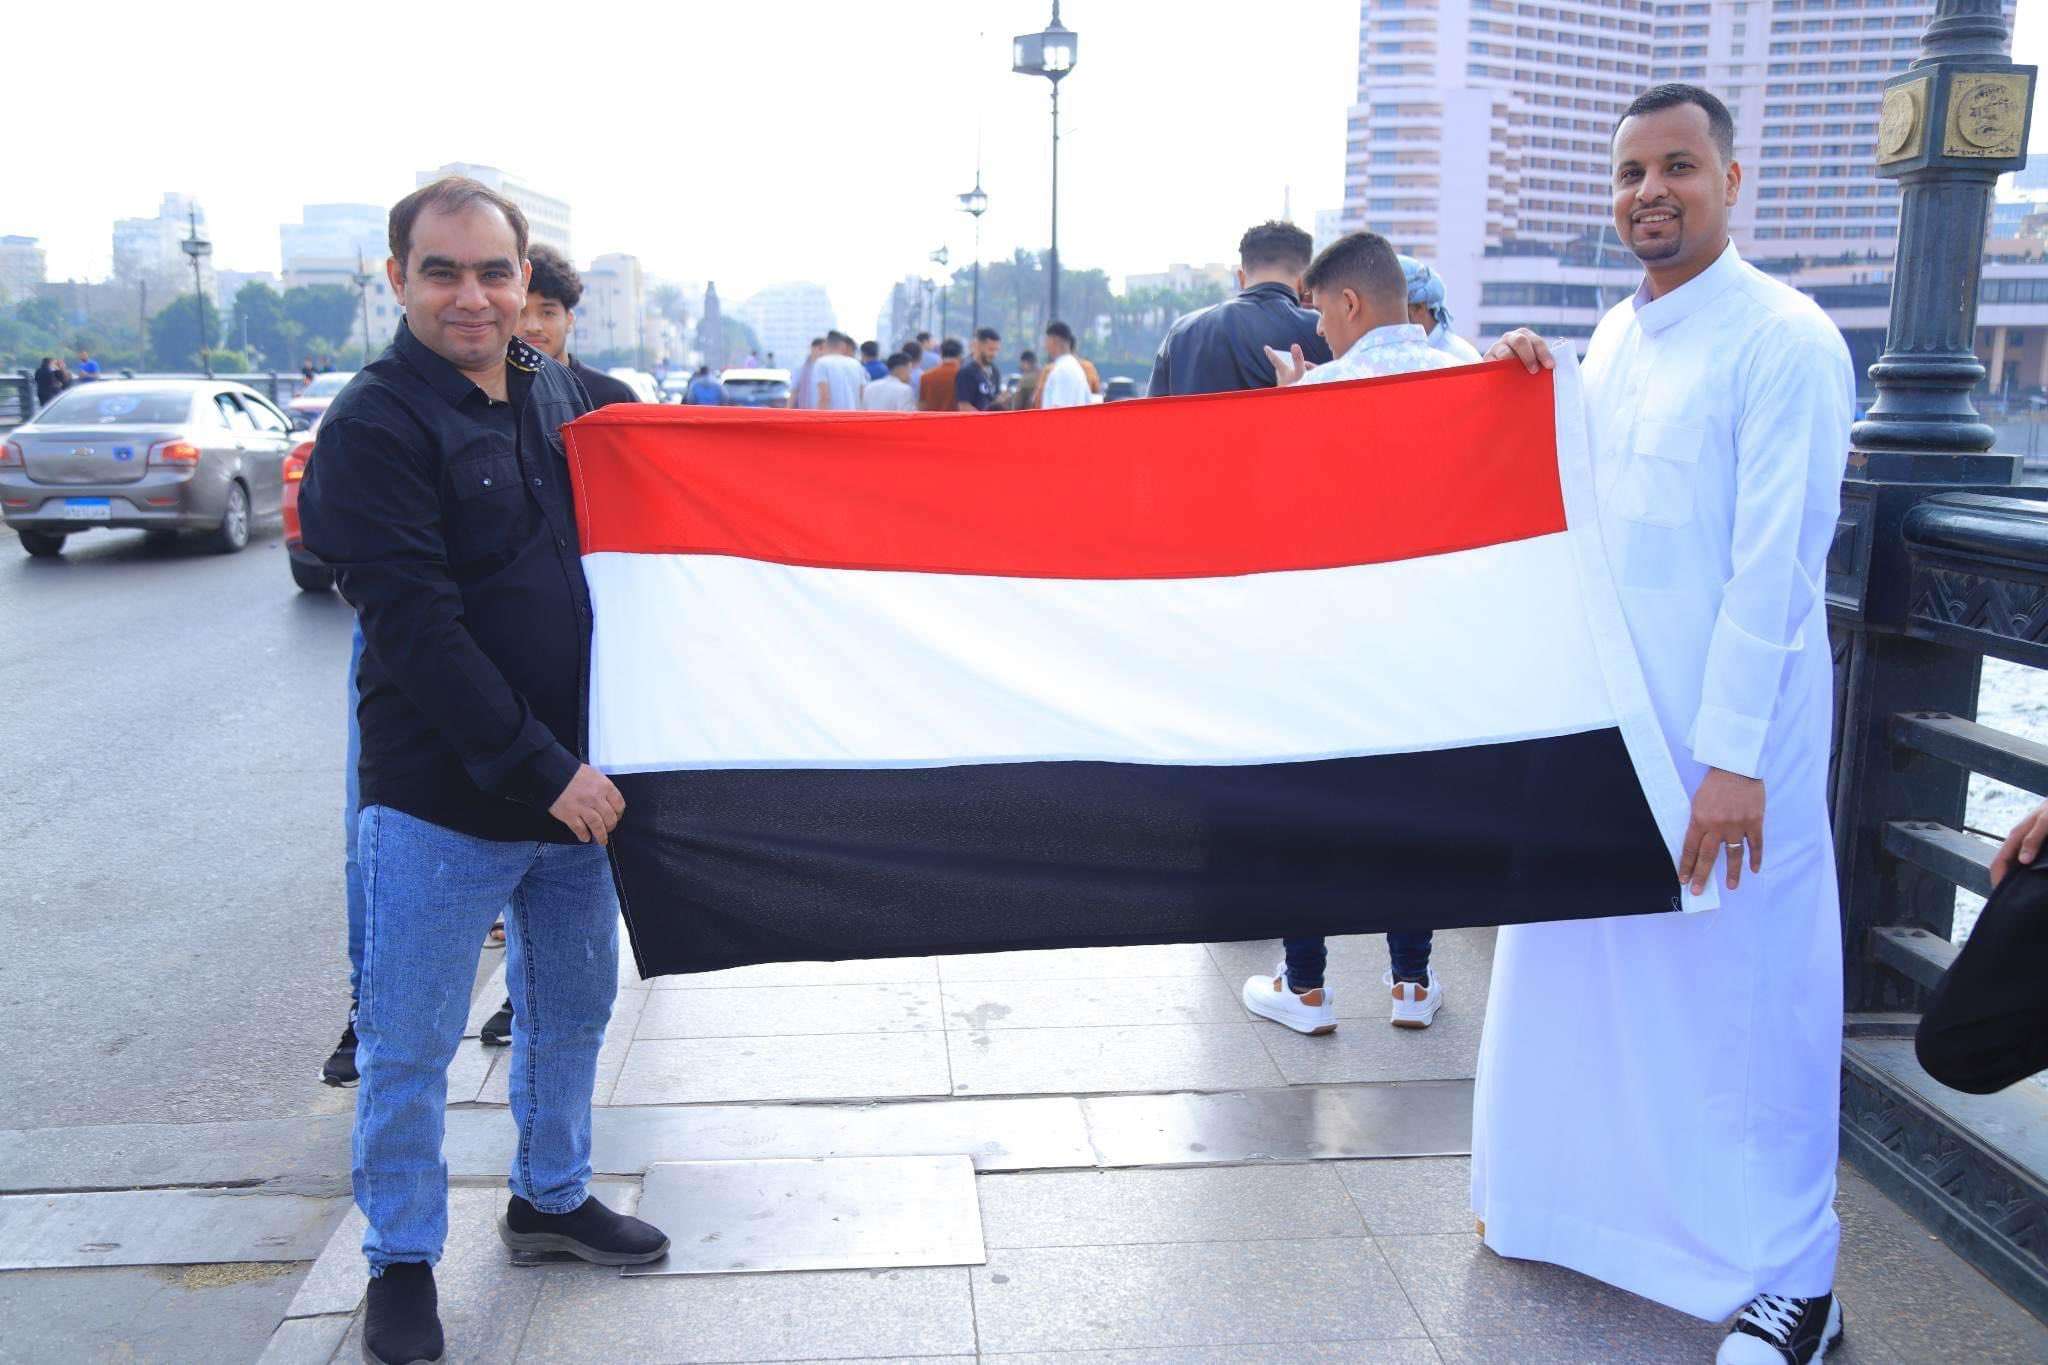  قيادي جنوبي كبير يوجه صفعة لقيادة الانتقالي برفعه علم الجمهورية اليمنية ويعلن تخليه عن هذا الأمر !